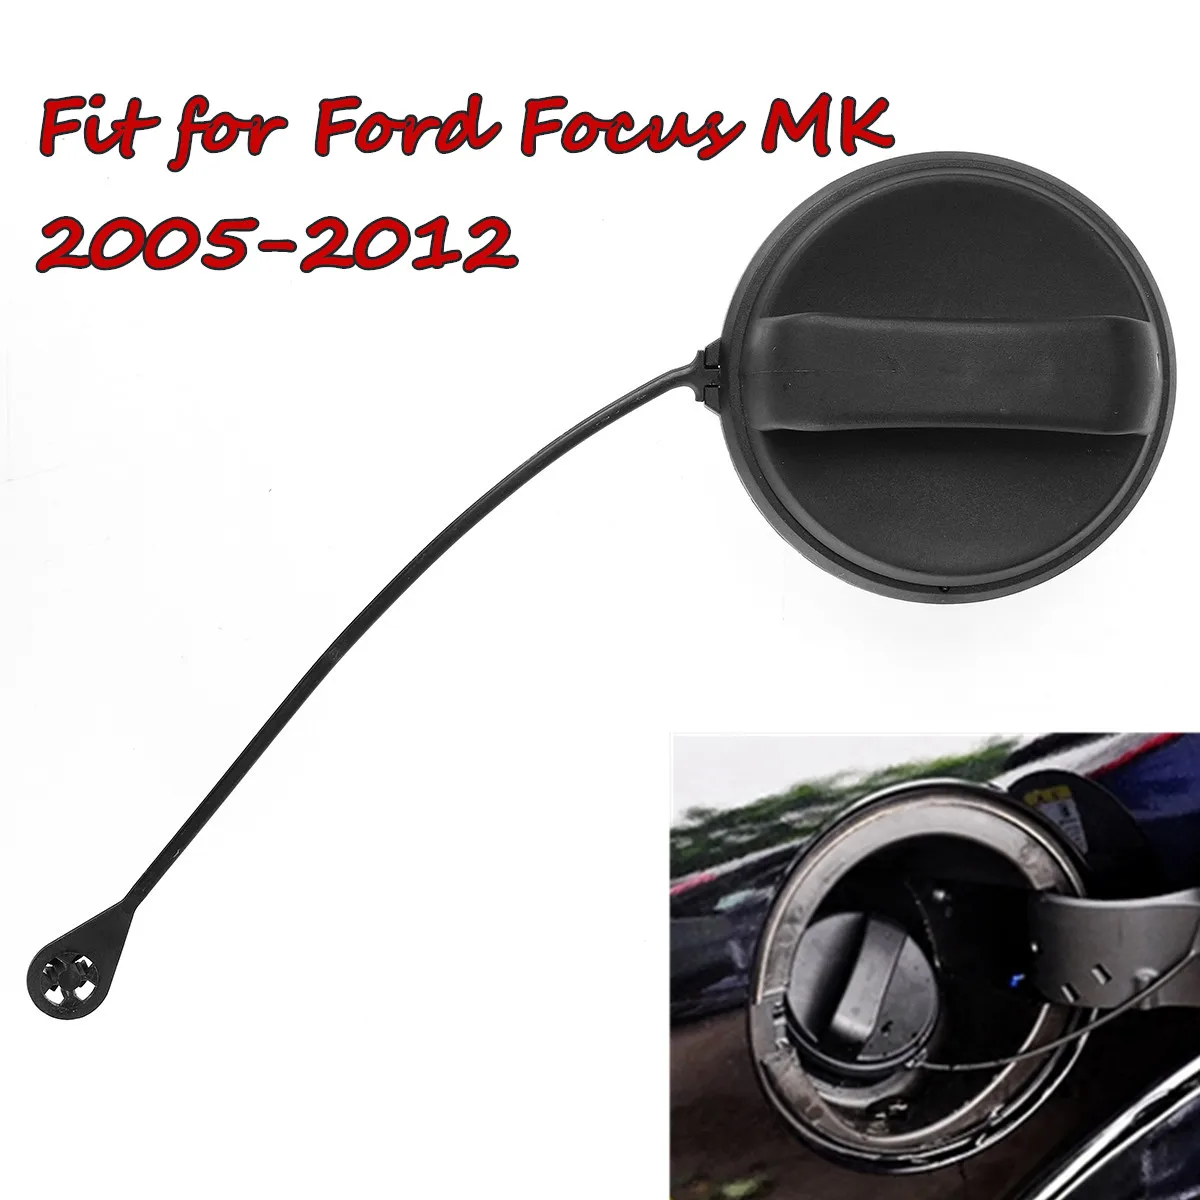 Новая крышка для топливного бака, подходит для Ford Focus MK2 2005-2008 2009 2010 2011 2012 пластик и Резина крышка масляного бака